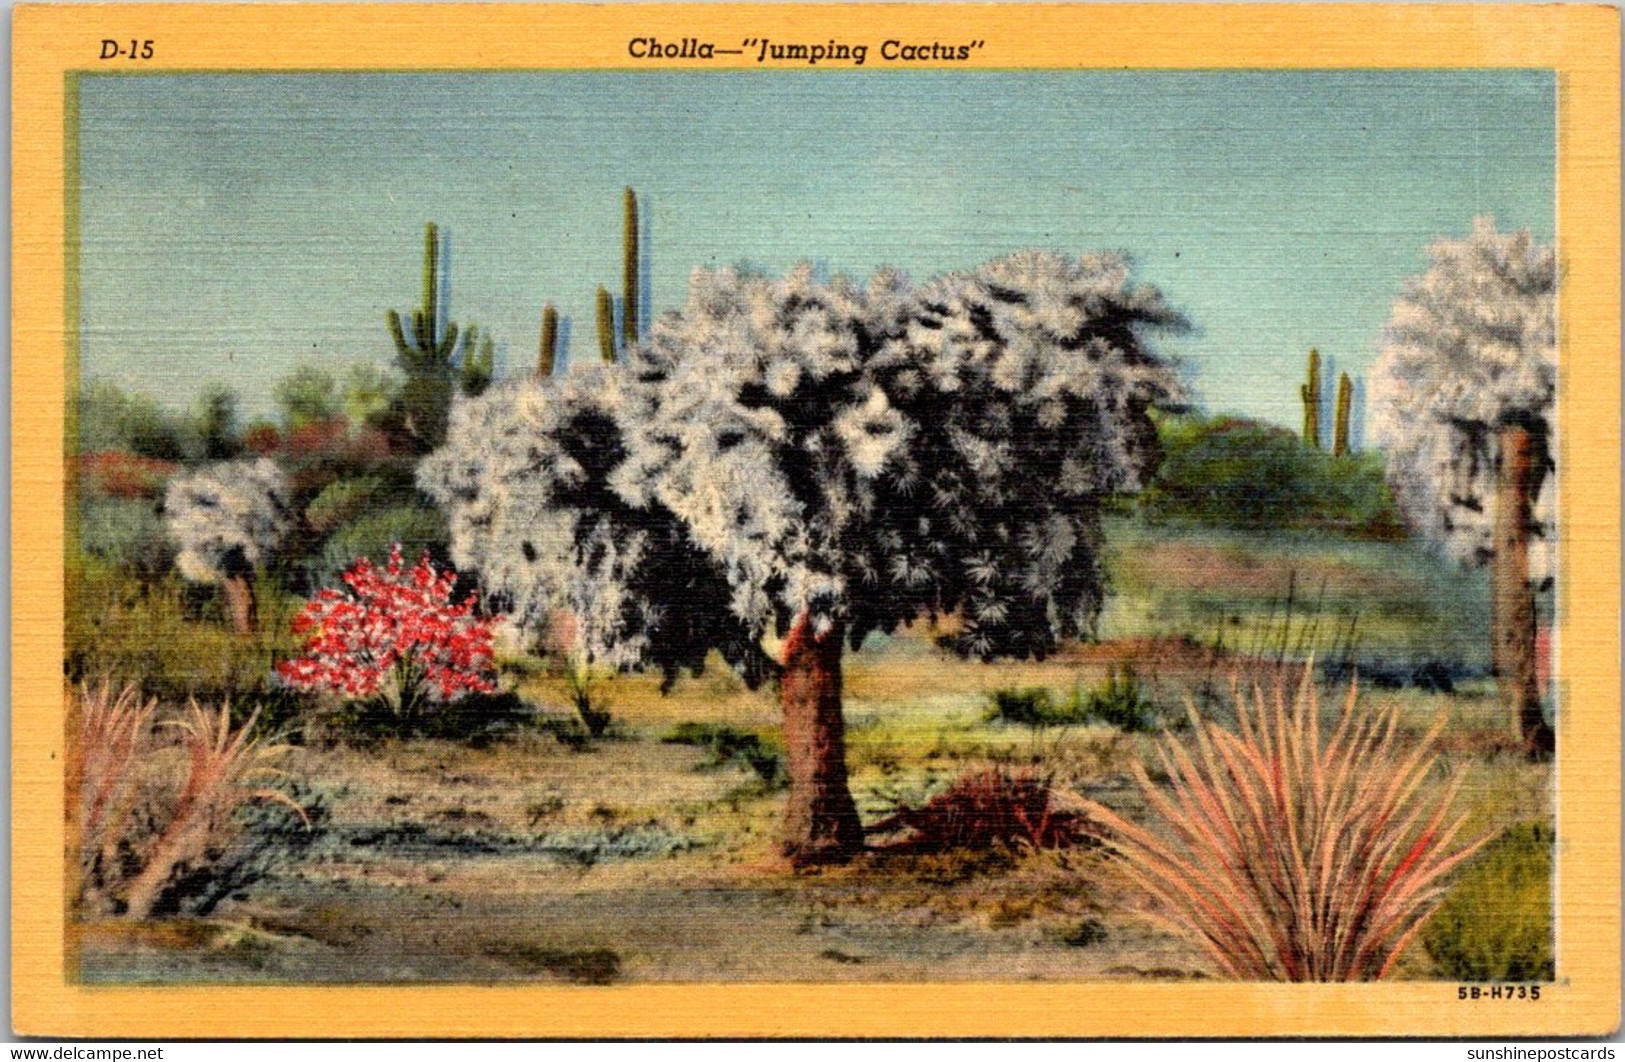 Cactus Cholla Cactus "Jumping Cactus" Curteich - Cactussen